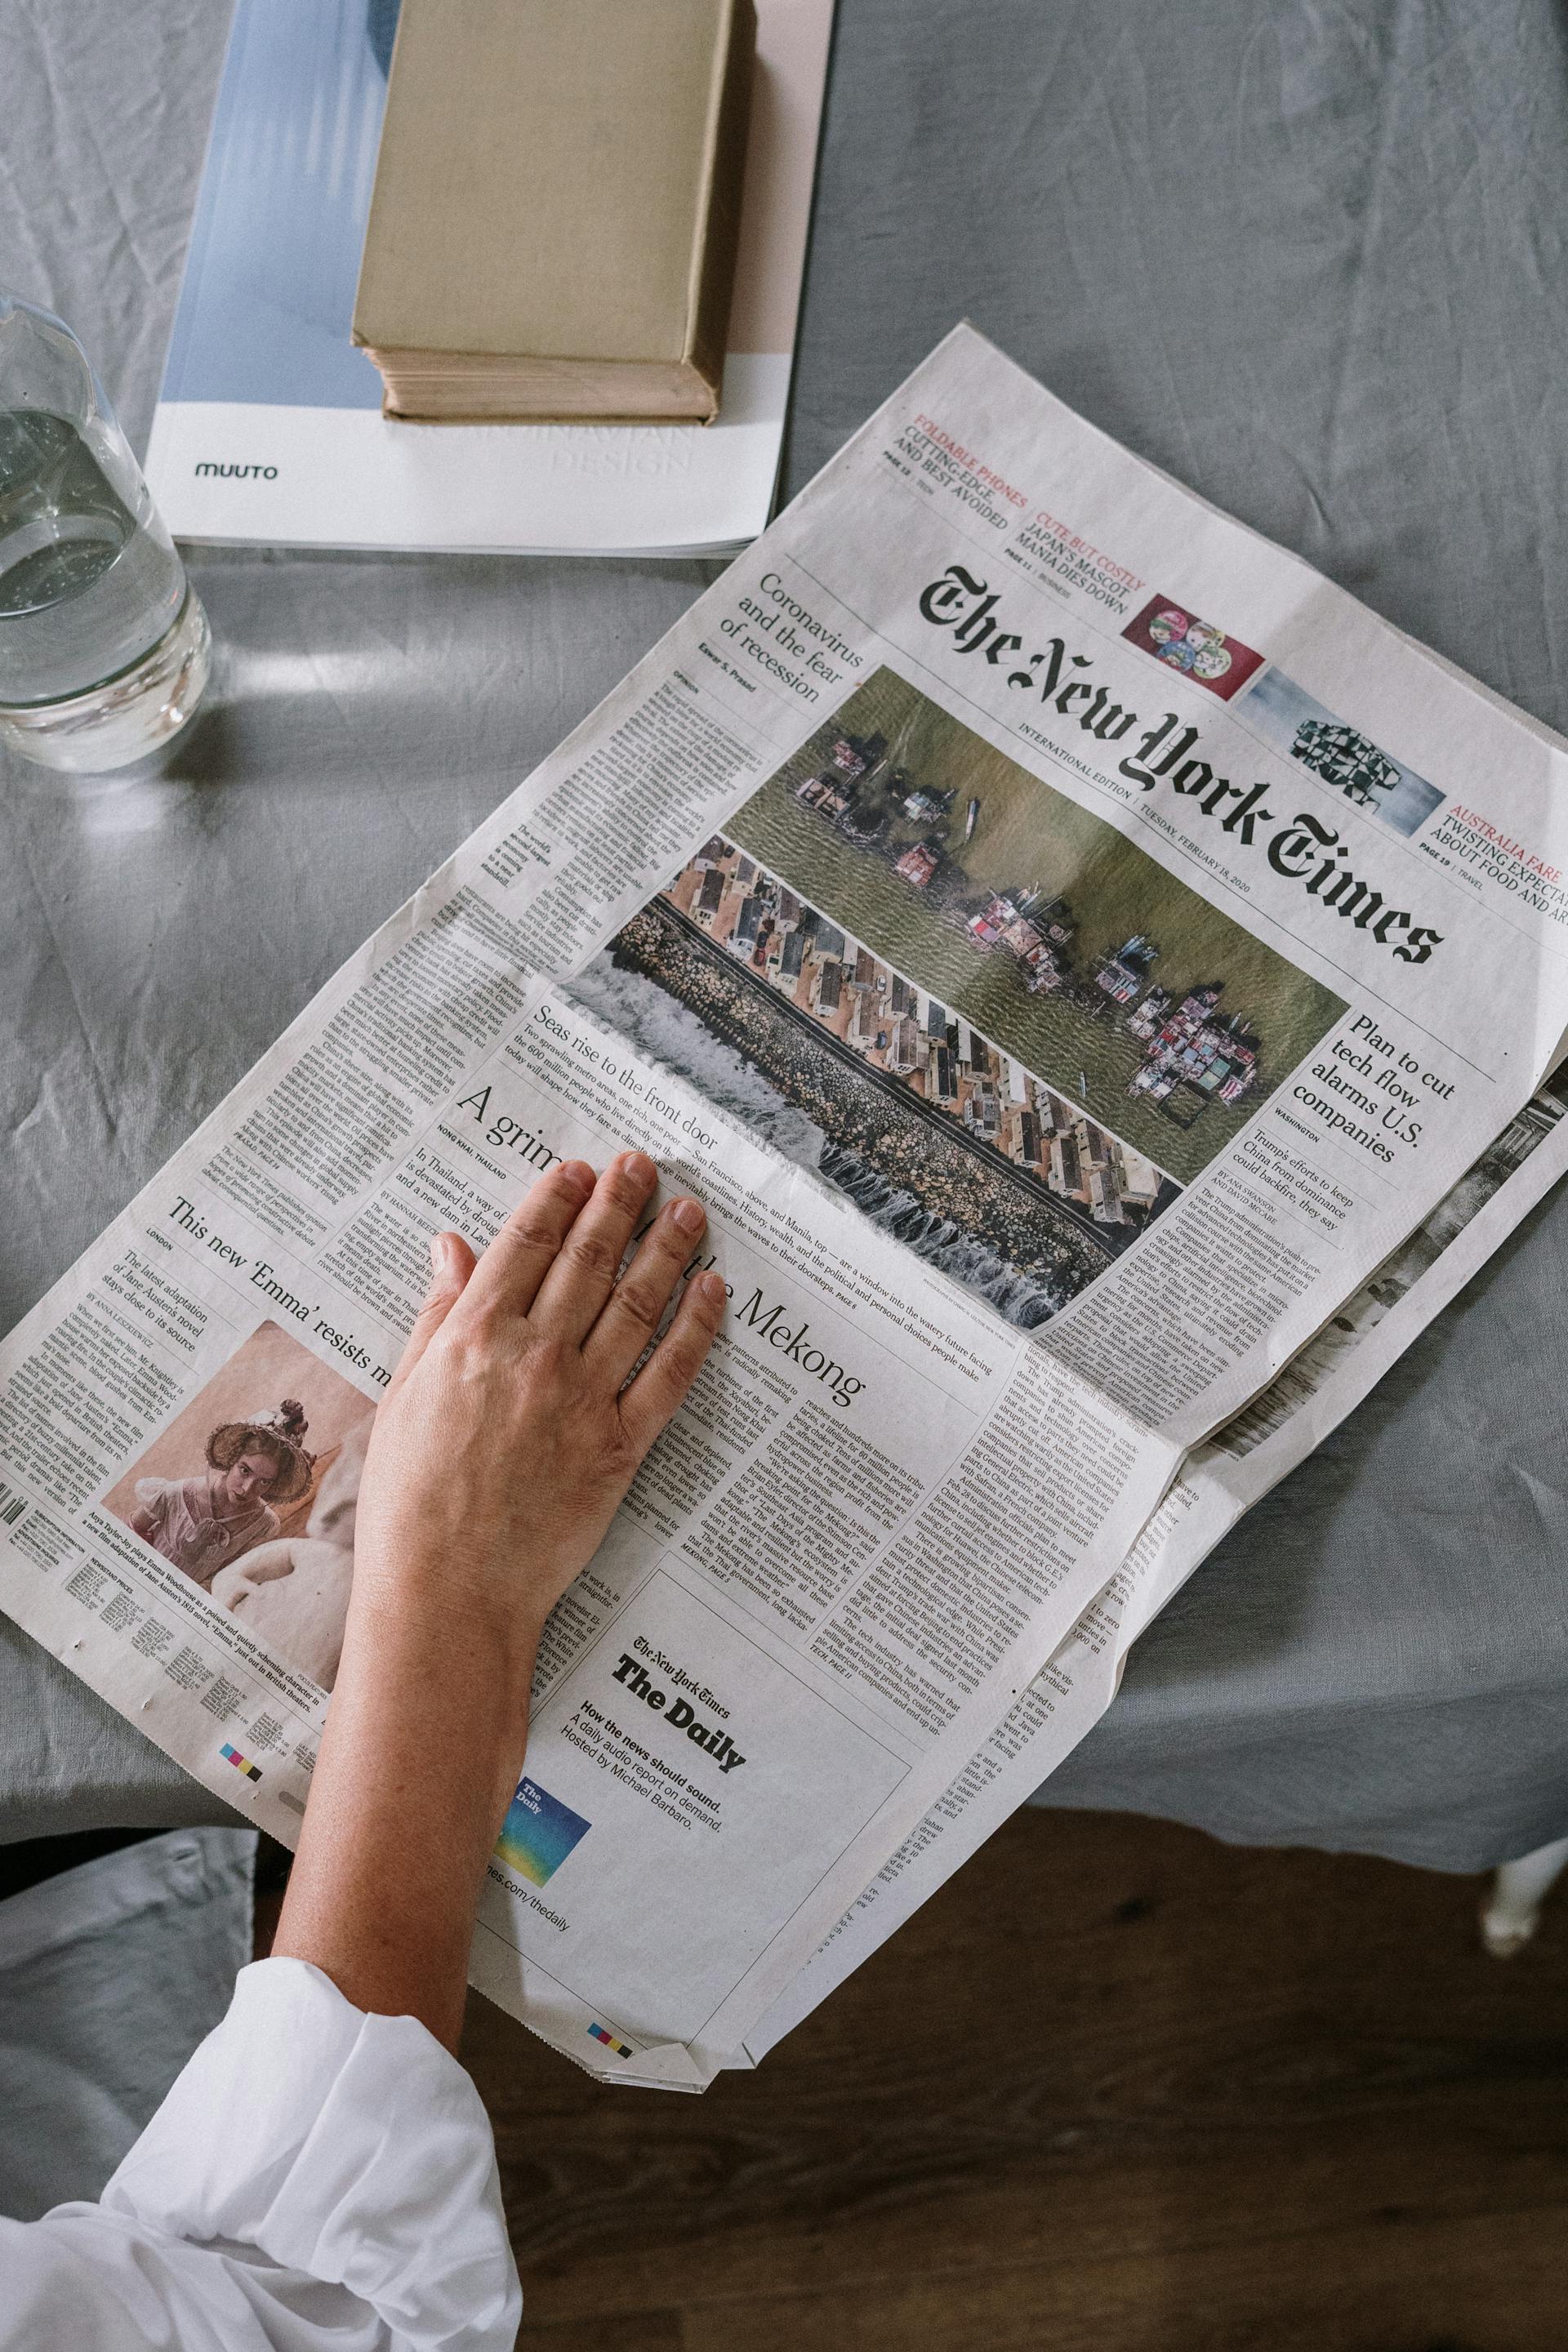 Une personne lisant un journal | Source : Pexels